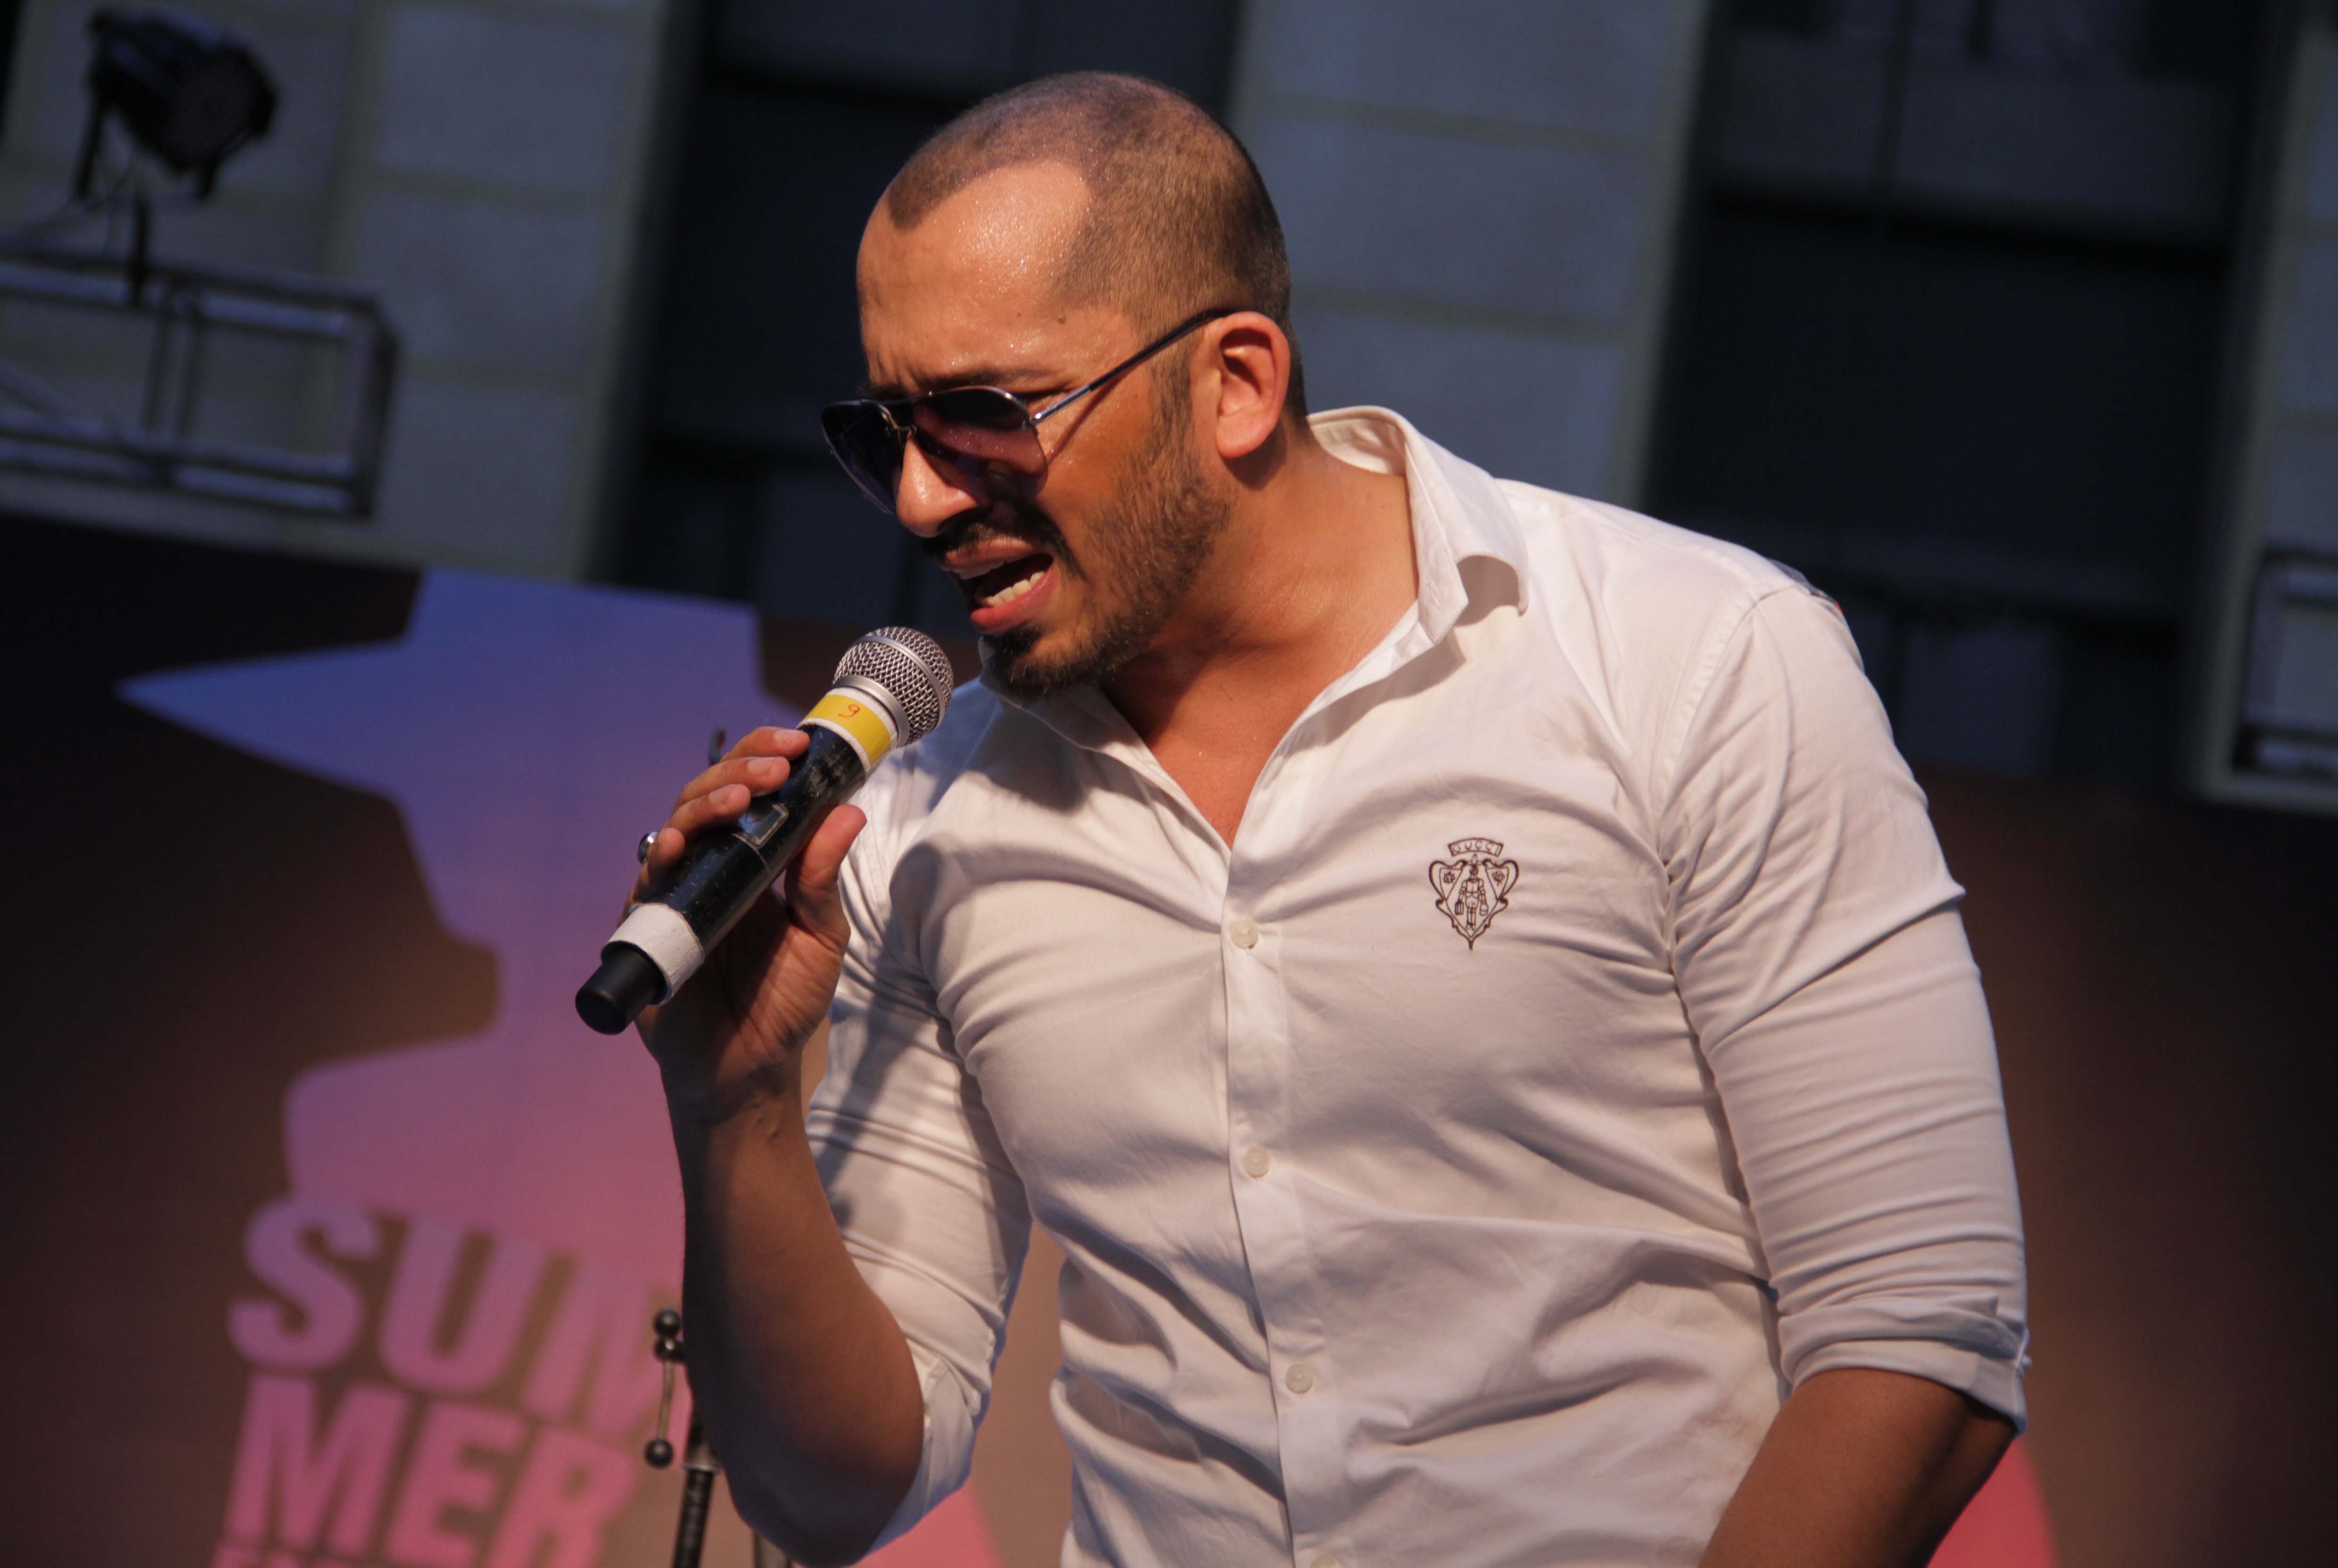 Singer Ali Quli Mirza at the 'Femina Festive Showcase 2014' Gurgaon Summer Fashion Show